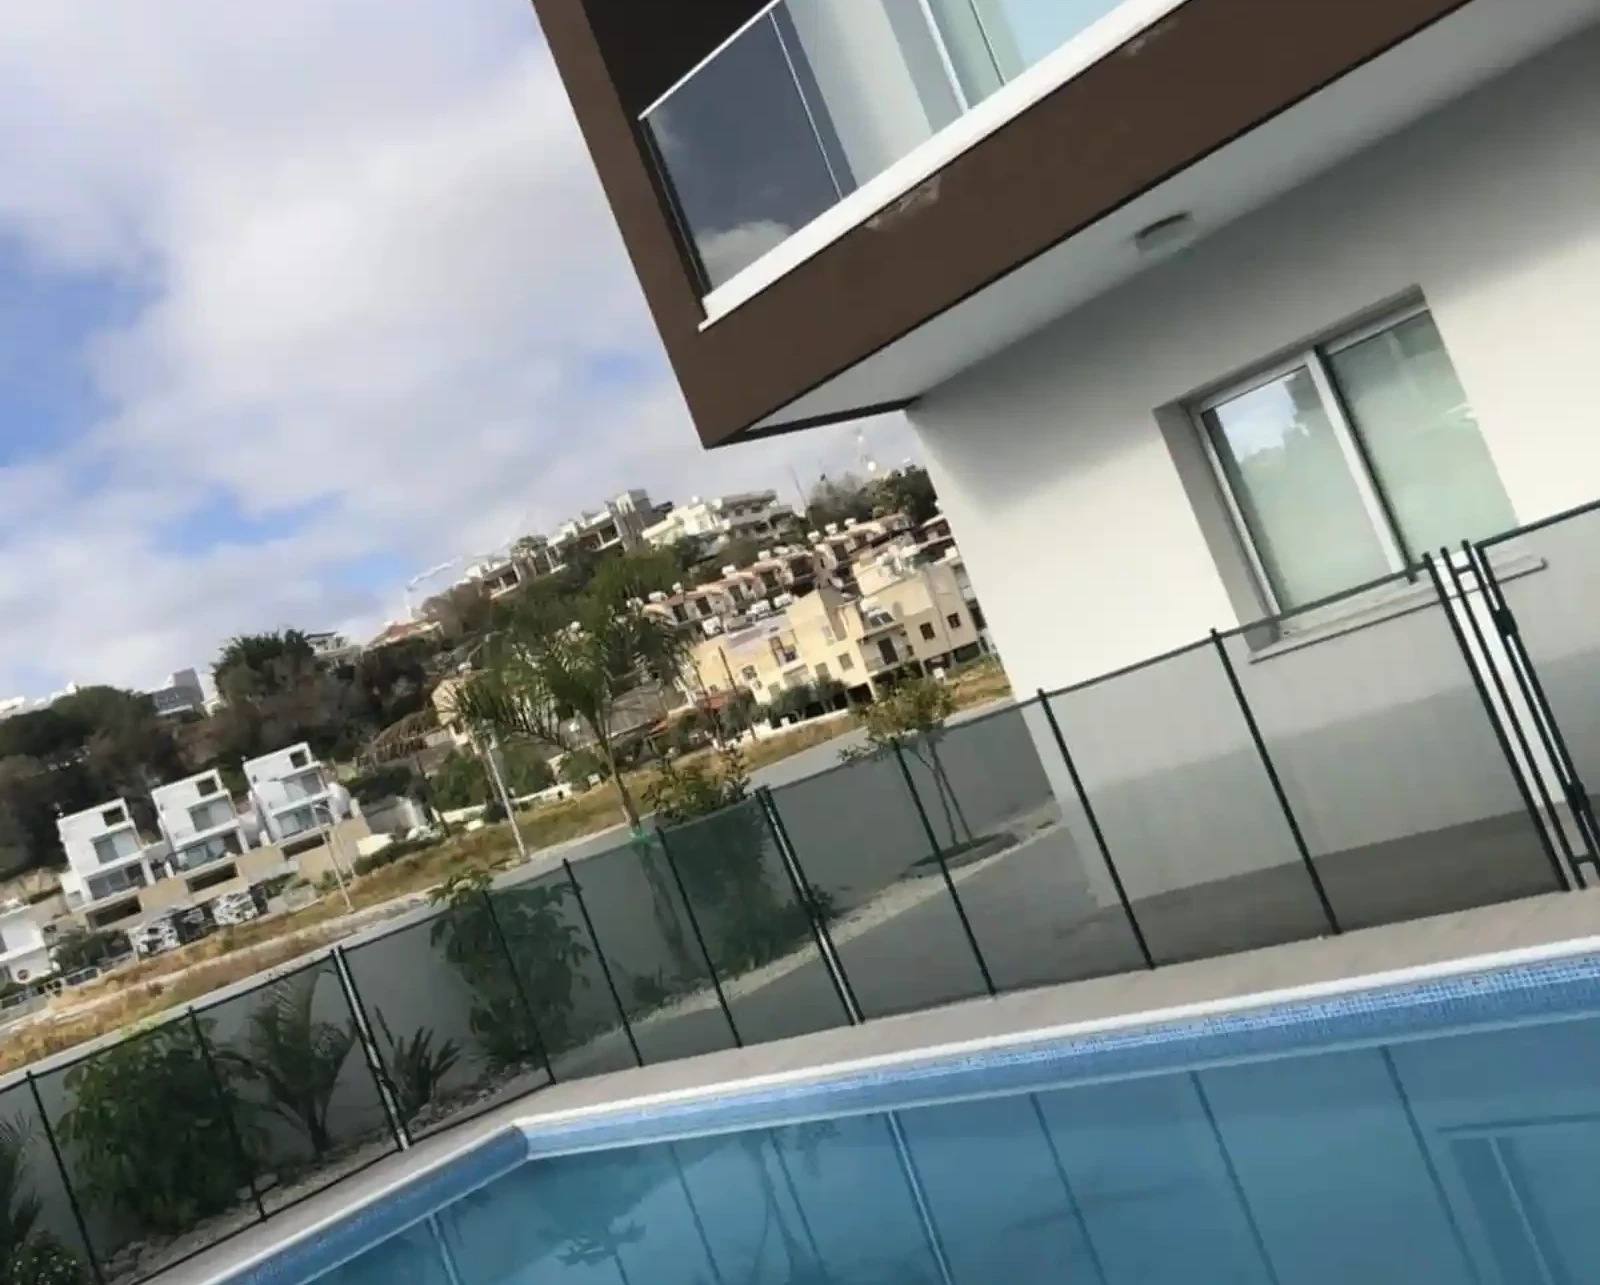 3-bedroom villa to rent €1.800, image 1